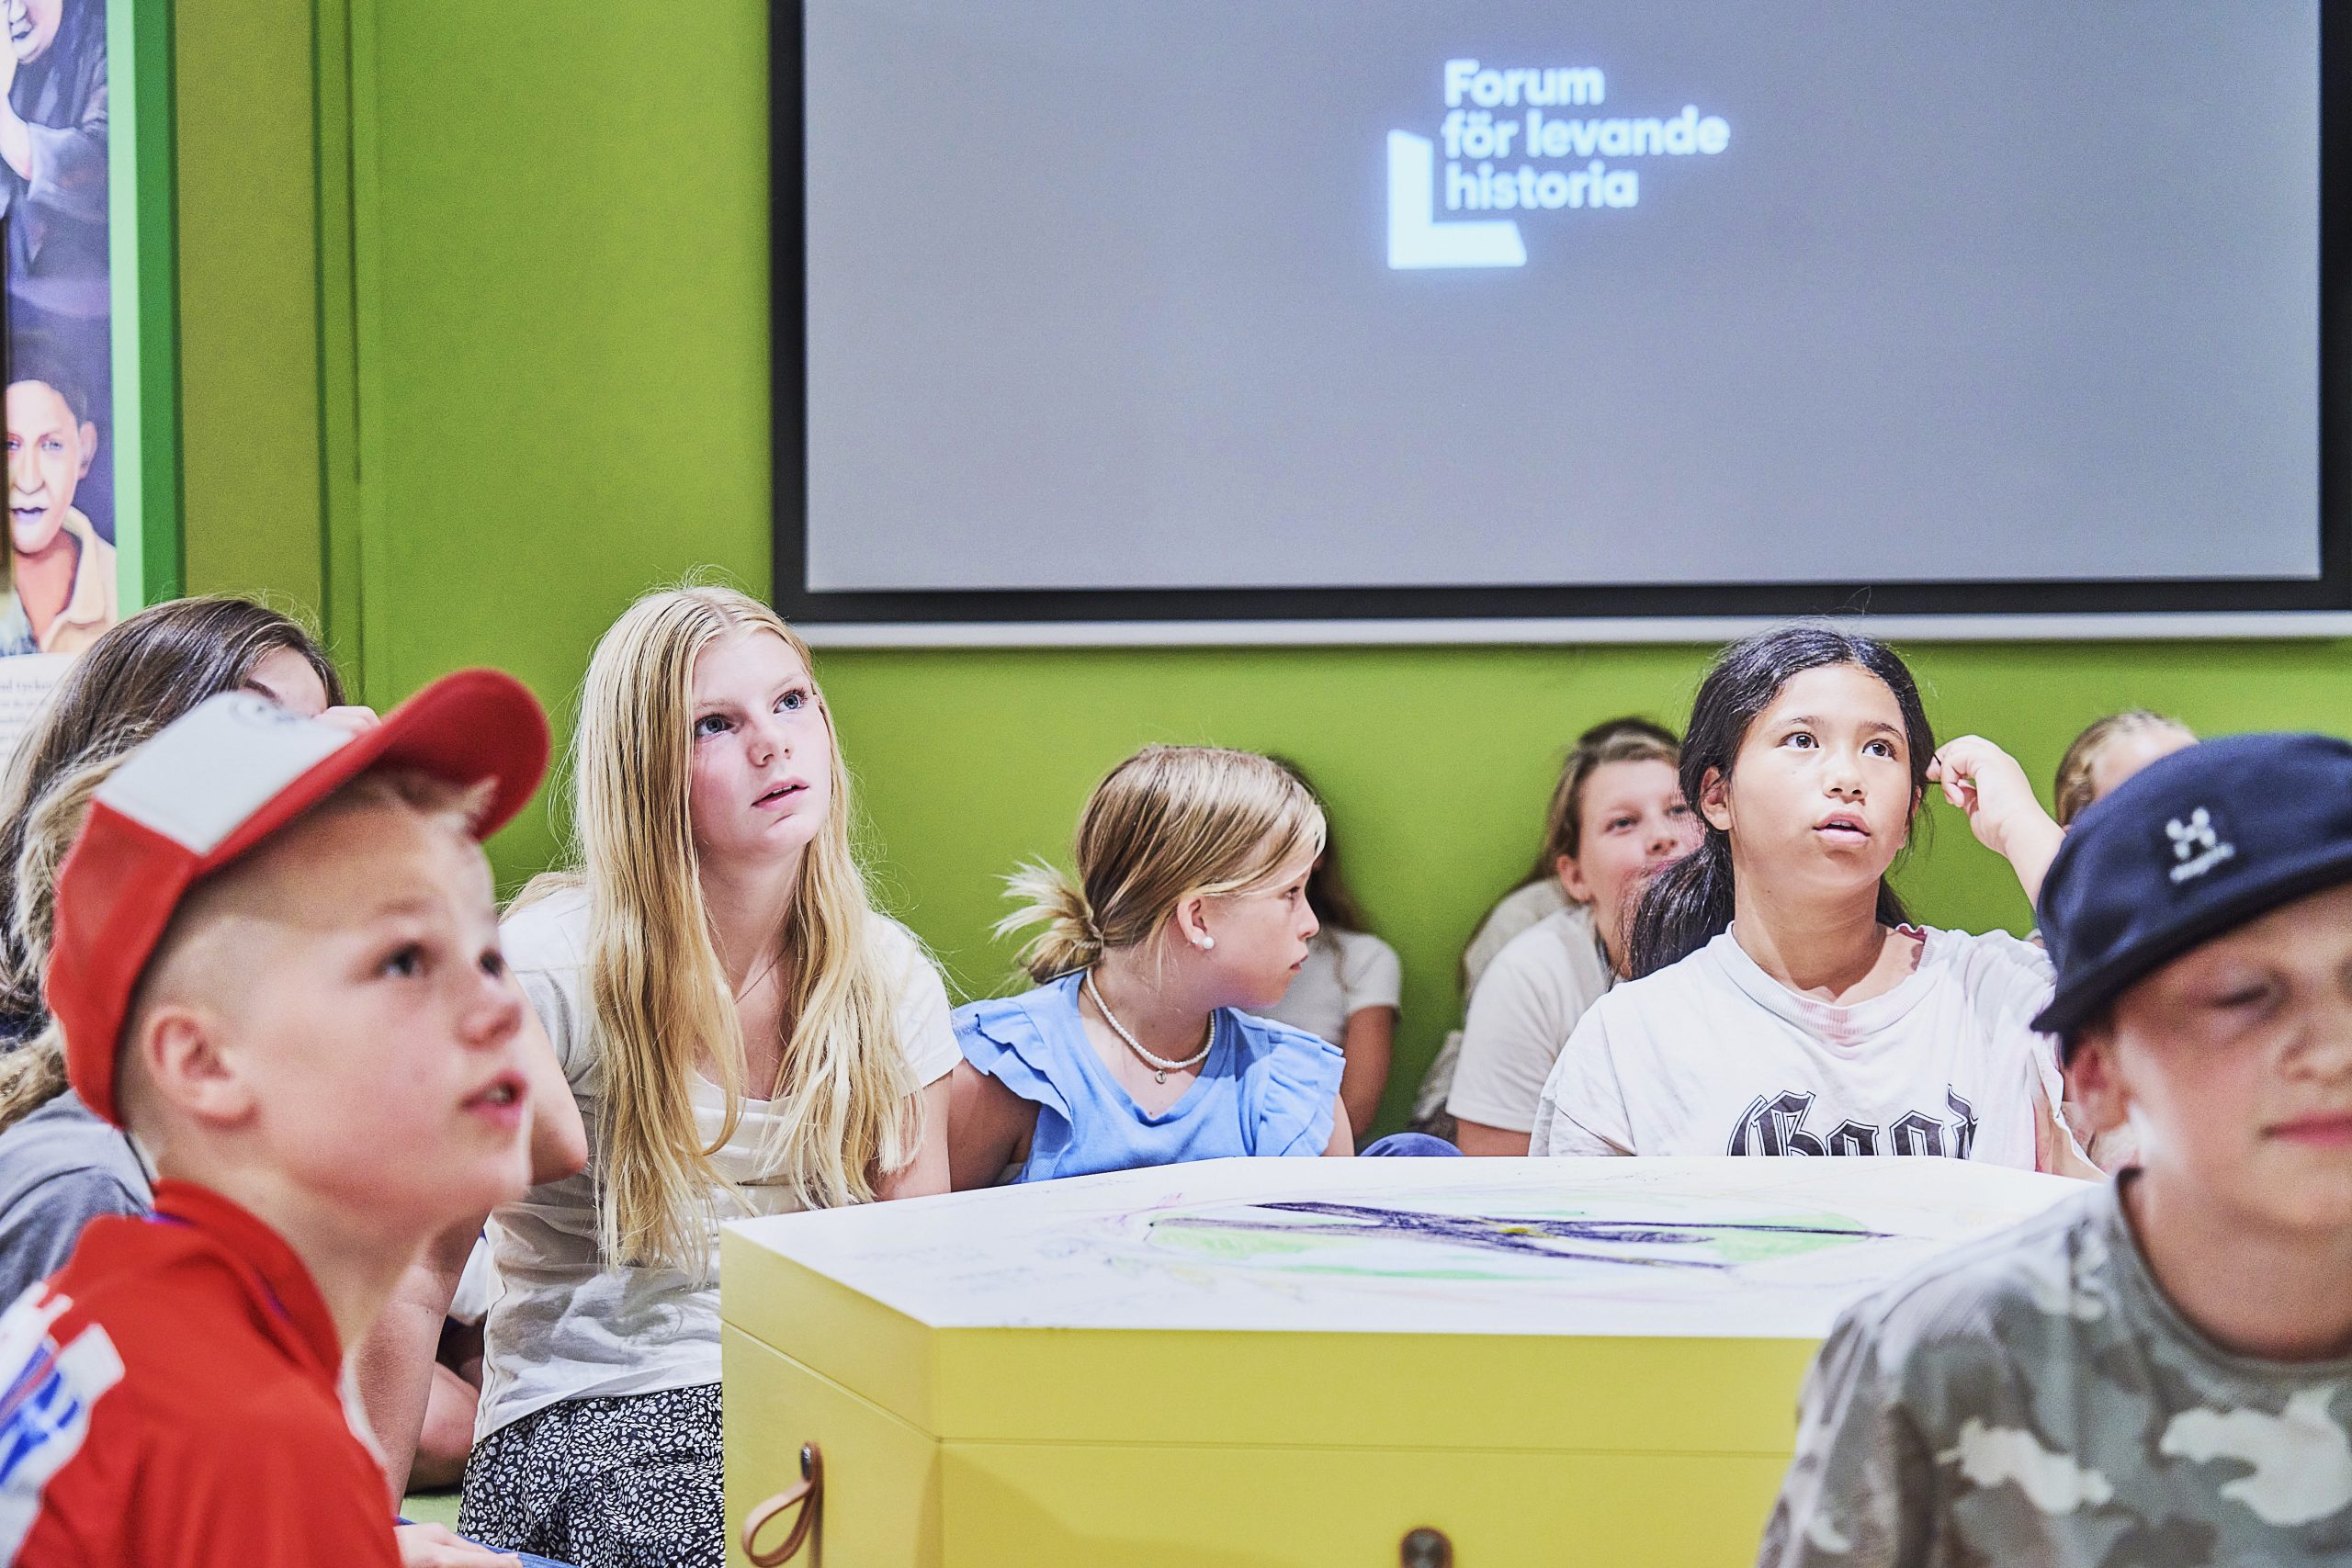 En grupp barn i en färgglad miljö tittar intresserad på något utanför bild.